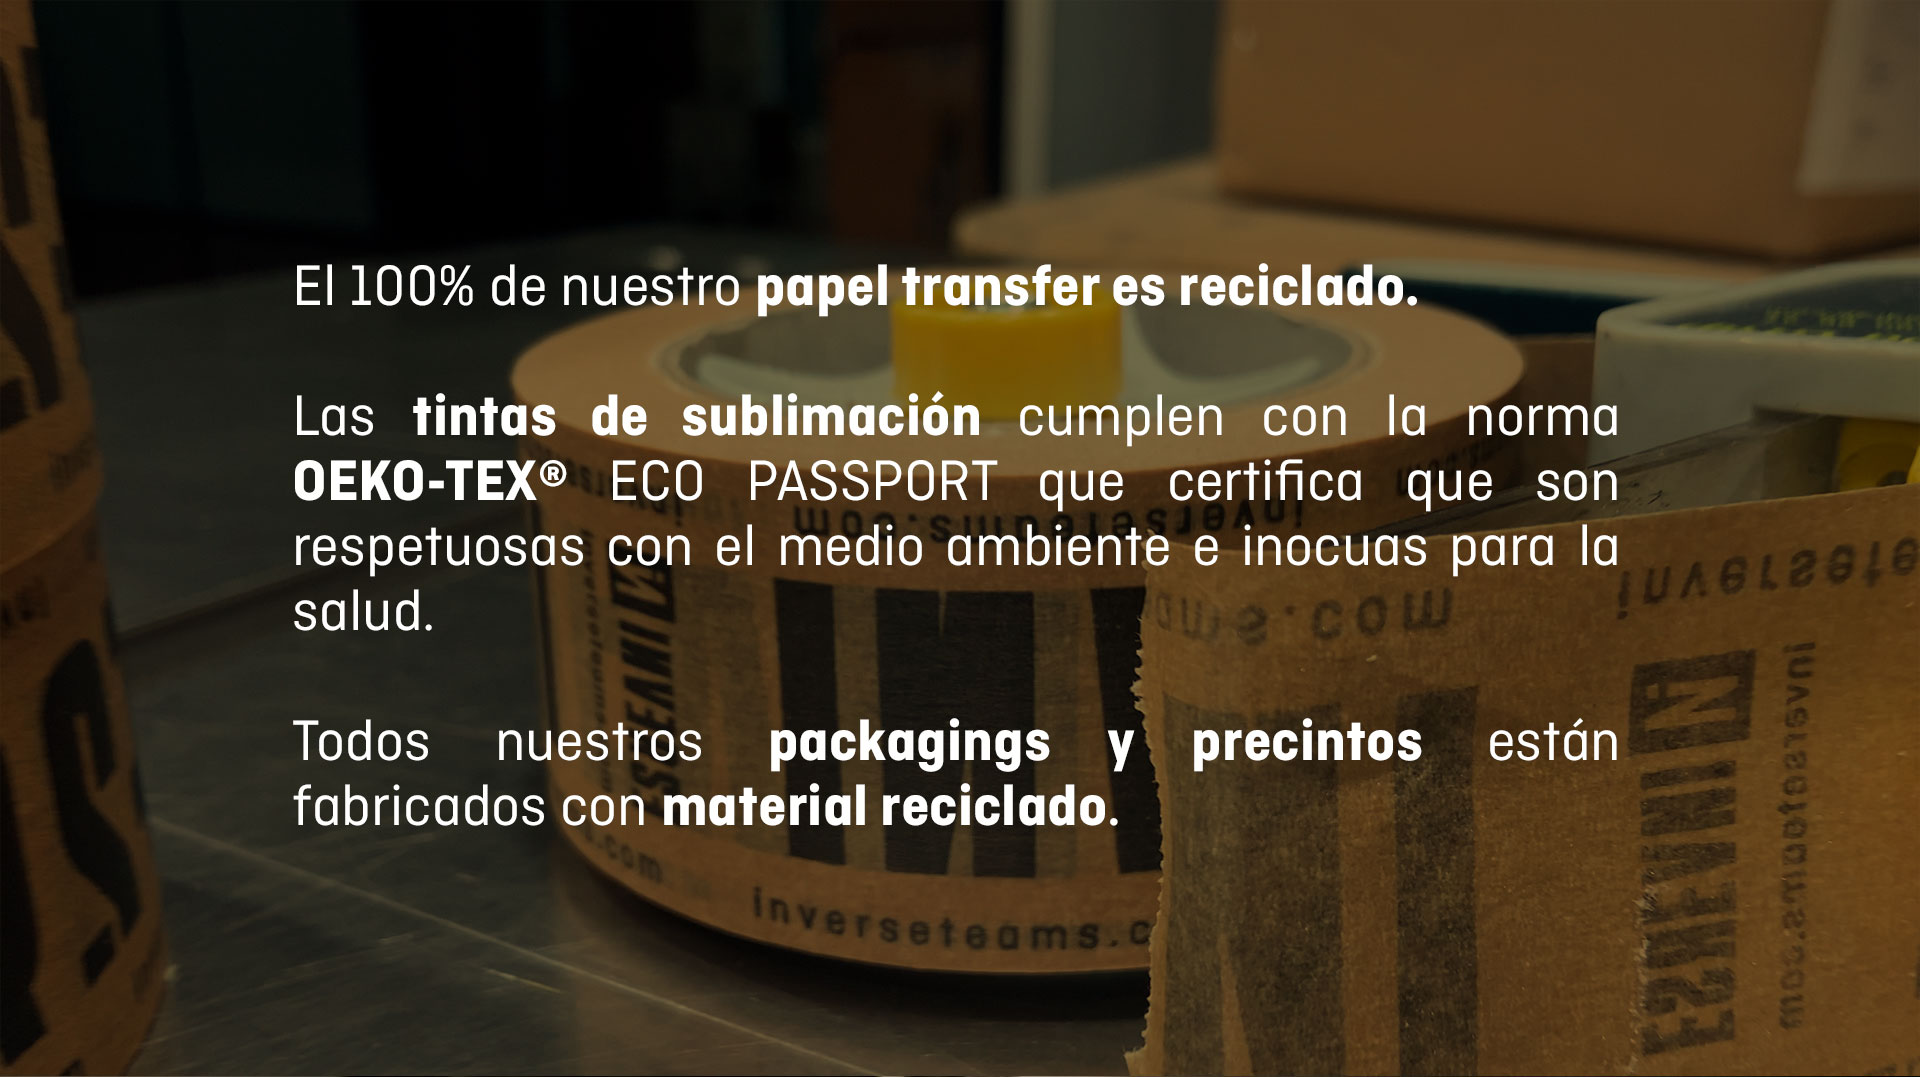 Papel transfer reciclado. Tintas de sublimación cumplen norma OEKO-TEX. Packaging reciclado